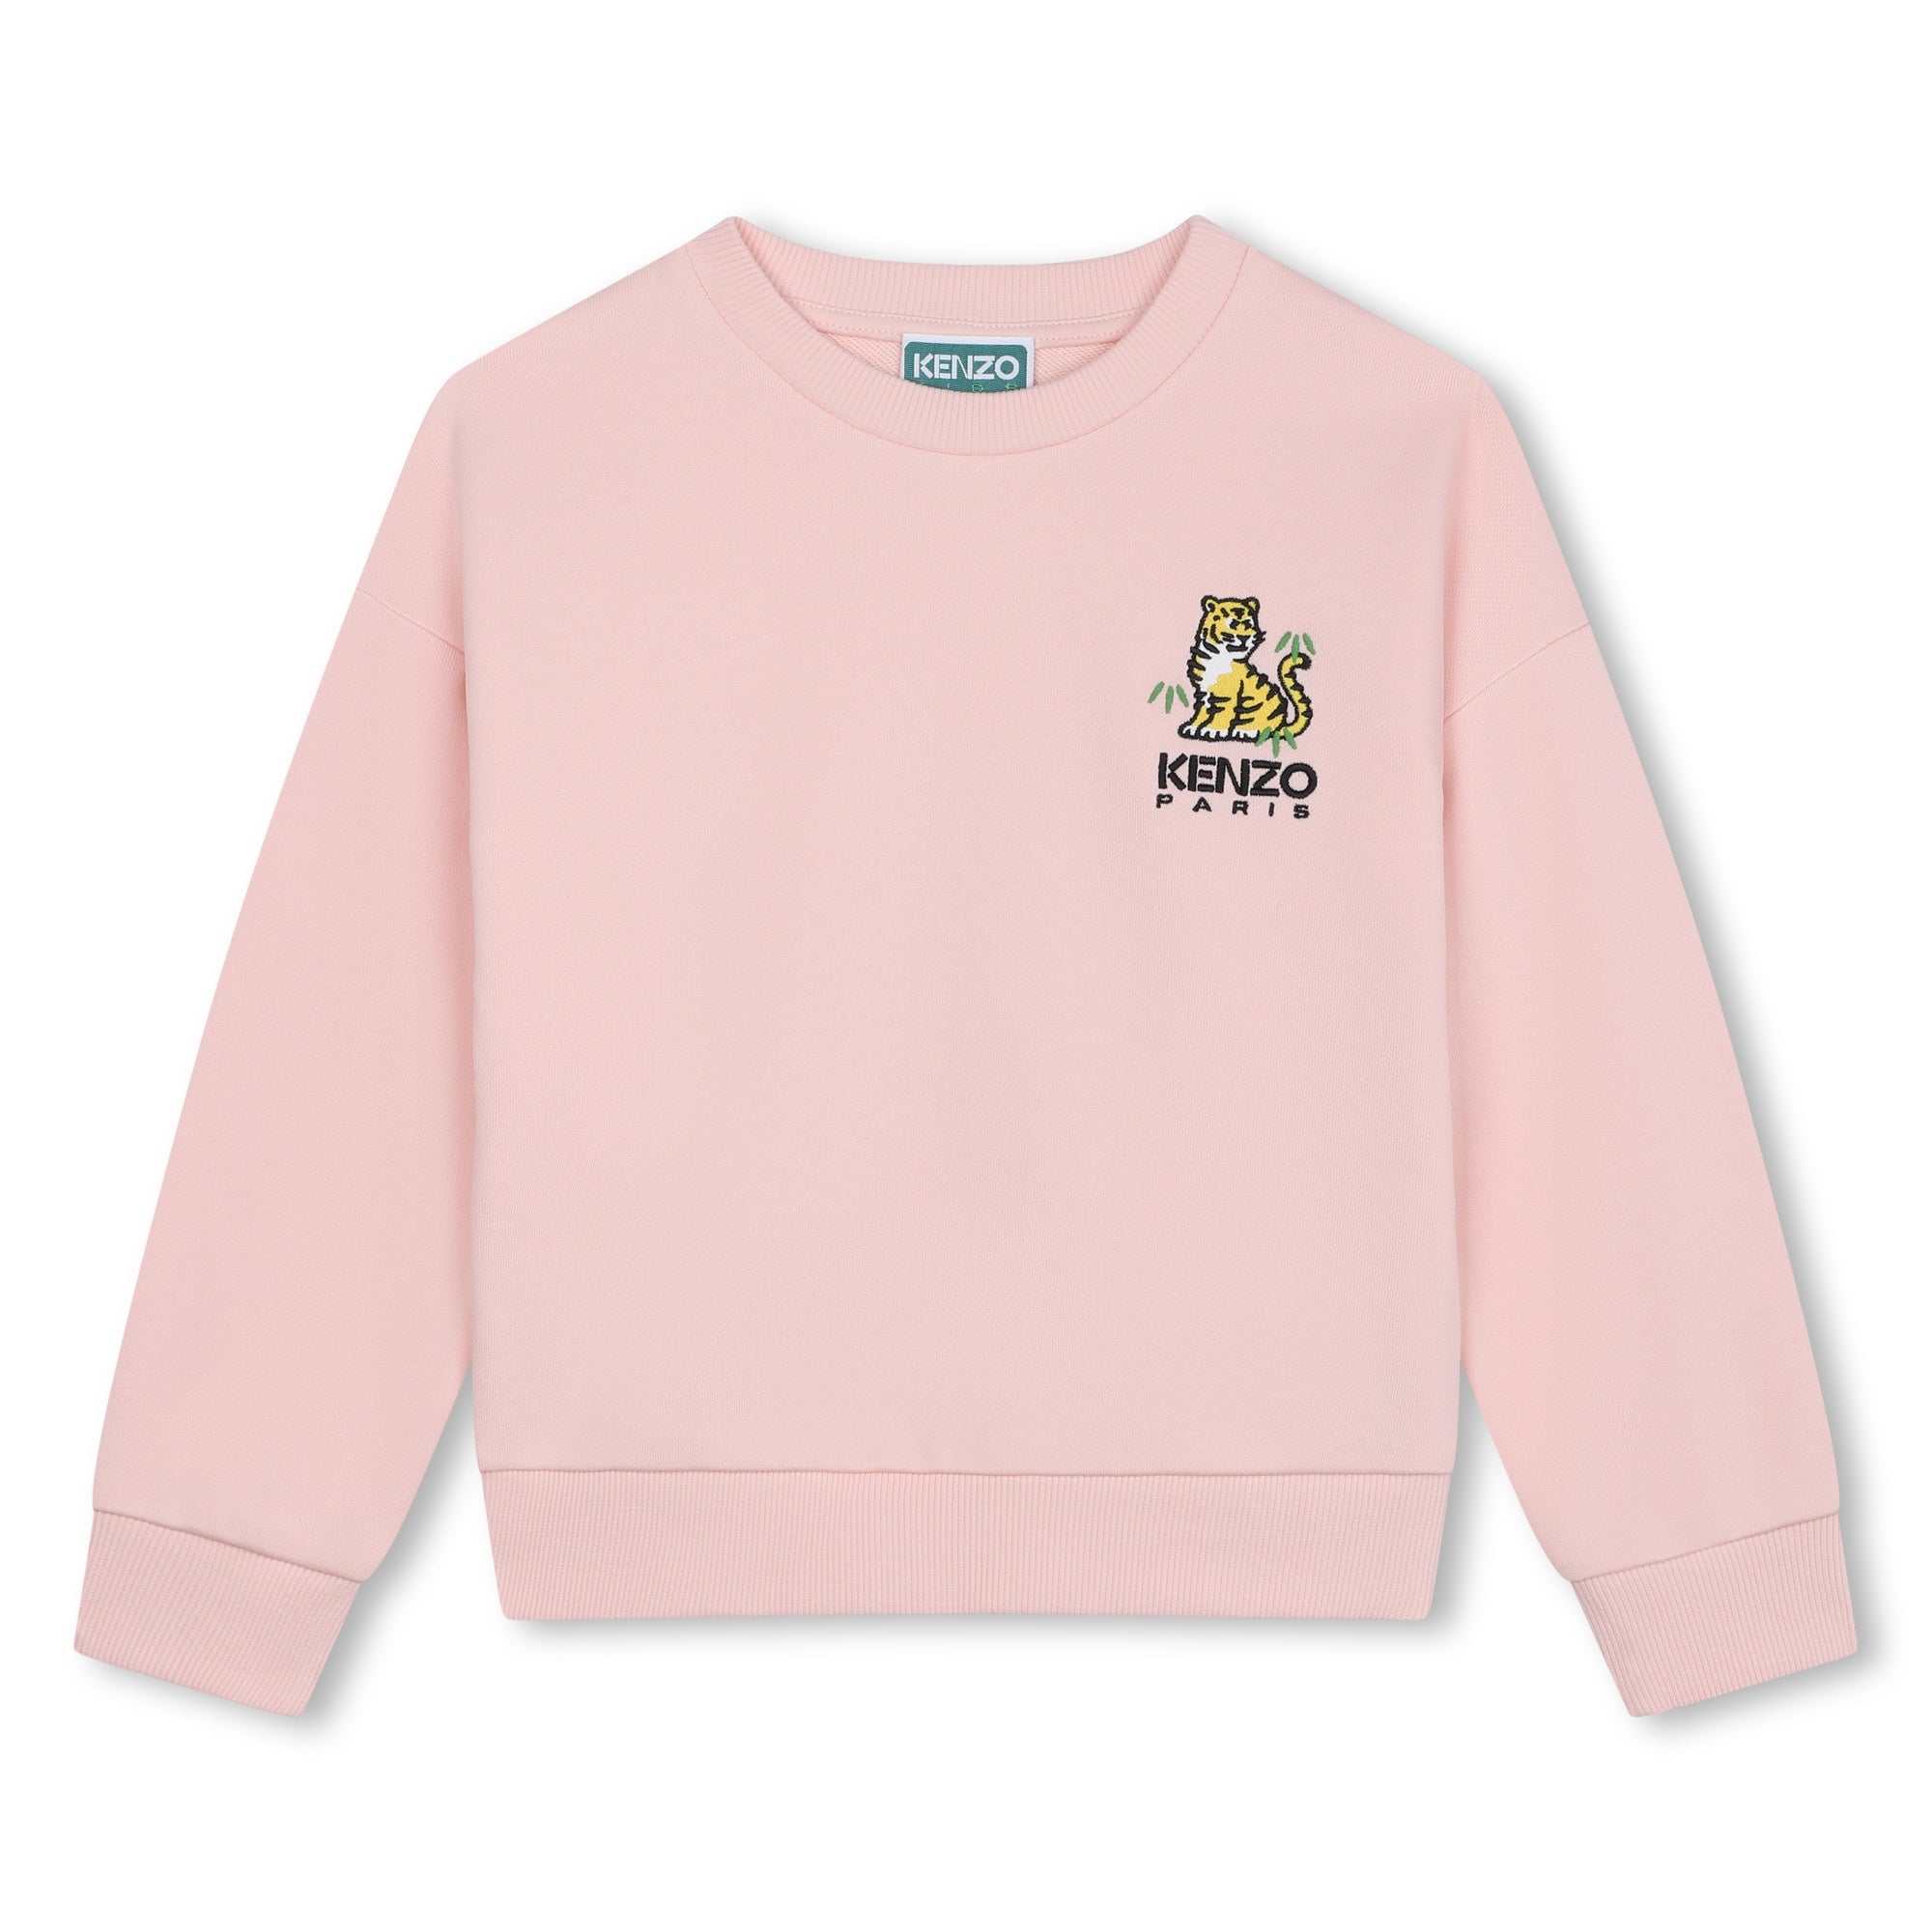 Kenzo Girls Pink Sweatshirt